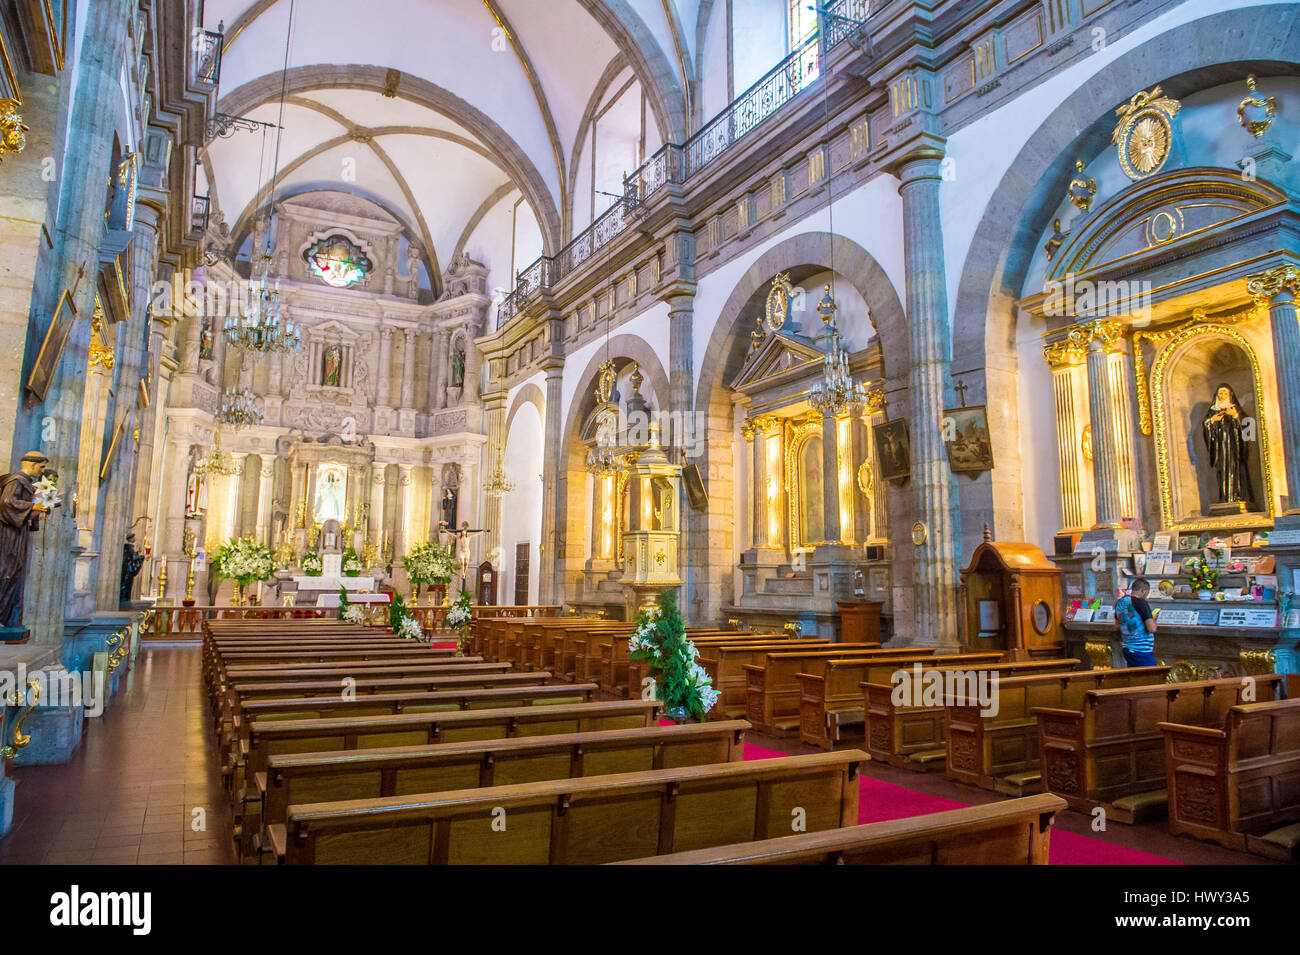 GUADALAJARA , MEXICO - AUG 29 : The interior of Parroquia De Nuestra Senora Del Rosario church in Guadalajara , Mexico on August 29 2016.  The church  Stock Photo